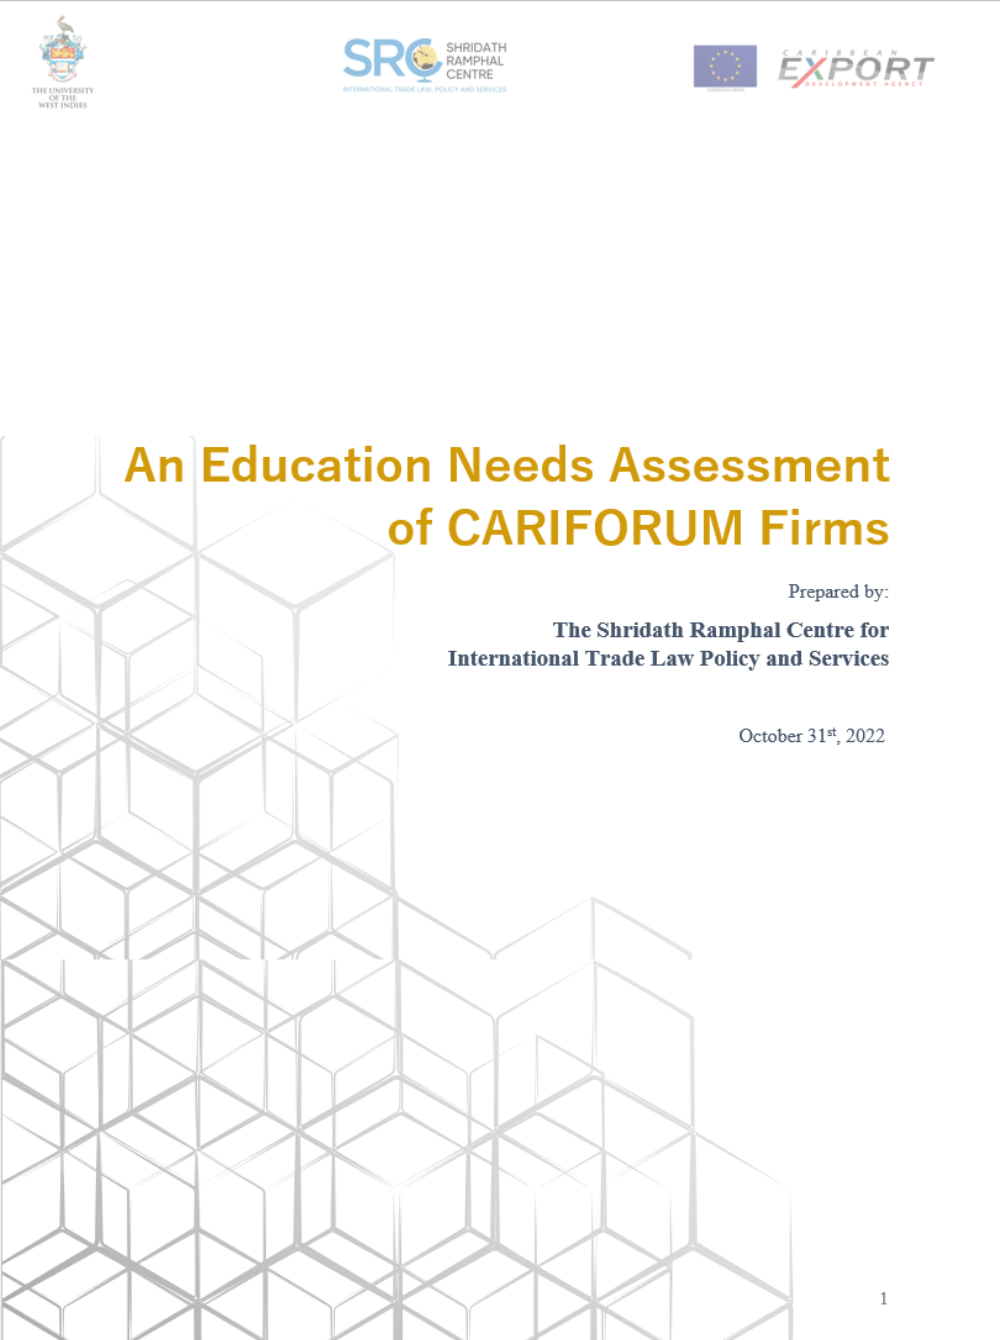 Een evaluatie van de onderwijsbehoeften van Cariforum-bedrijven